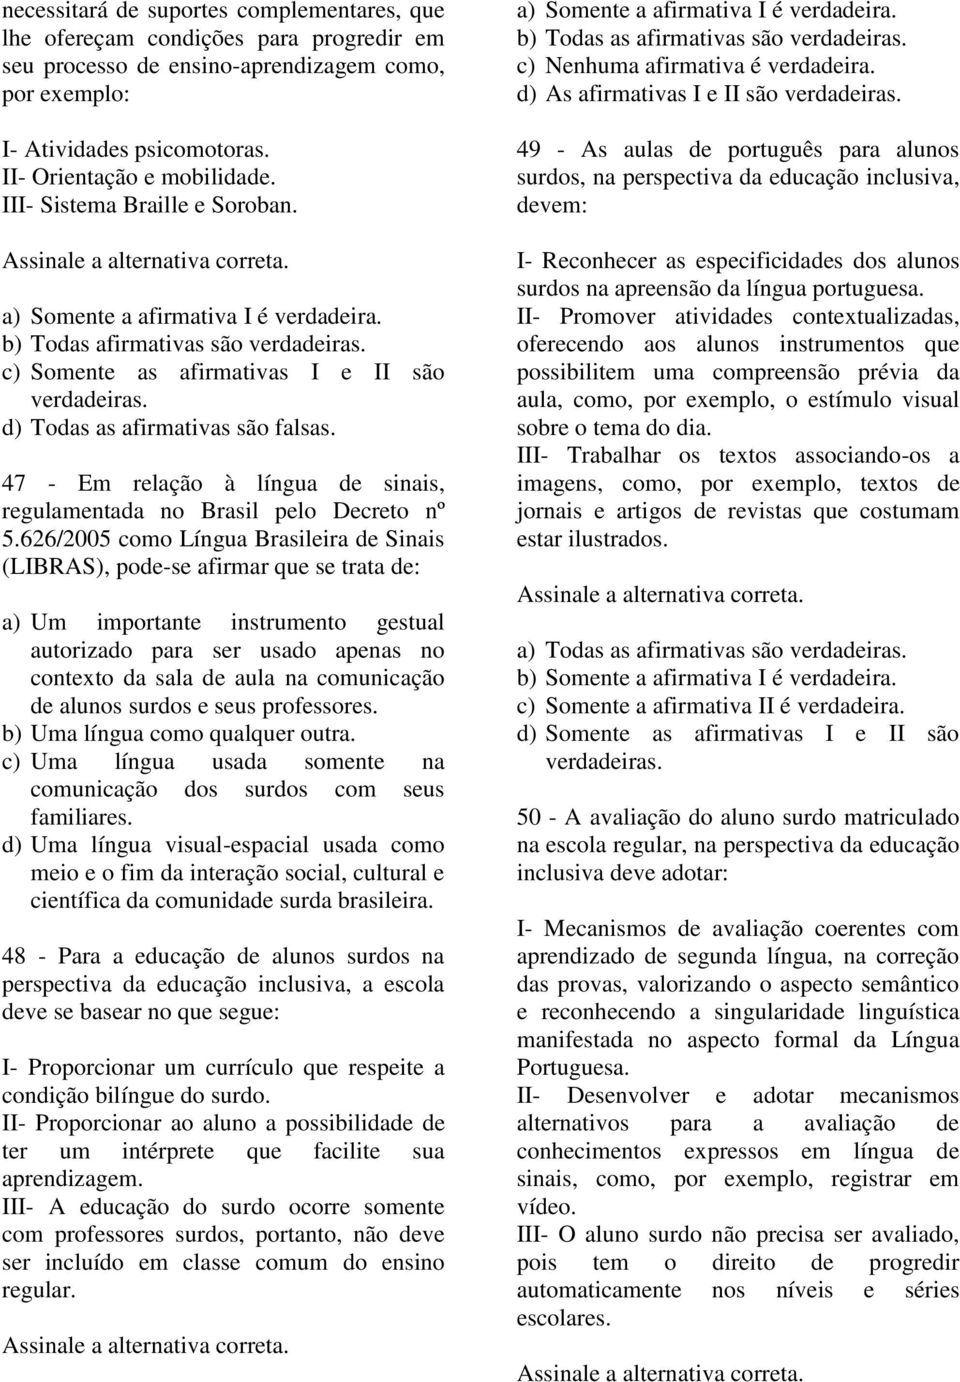 47 - Em relação à língua de sinais, regulamentada no Brasil pelo Decreto nº 5.